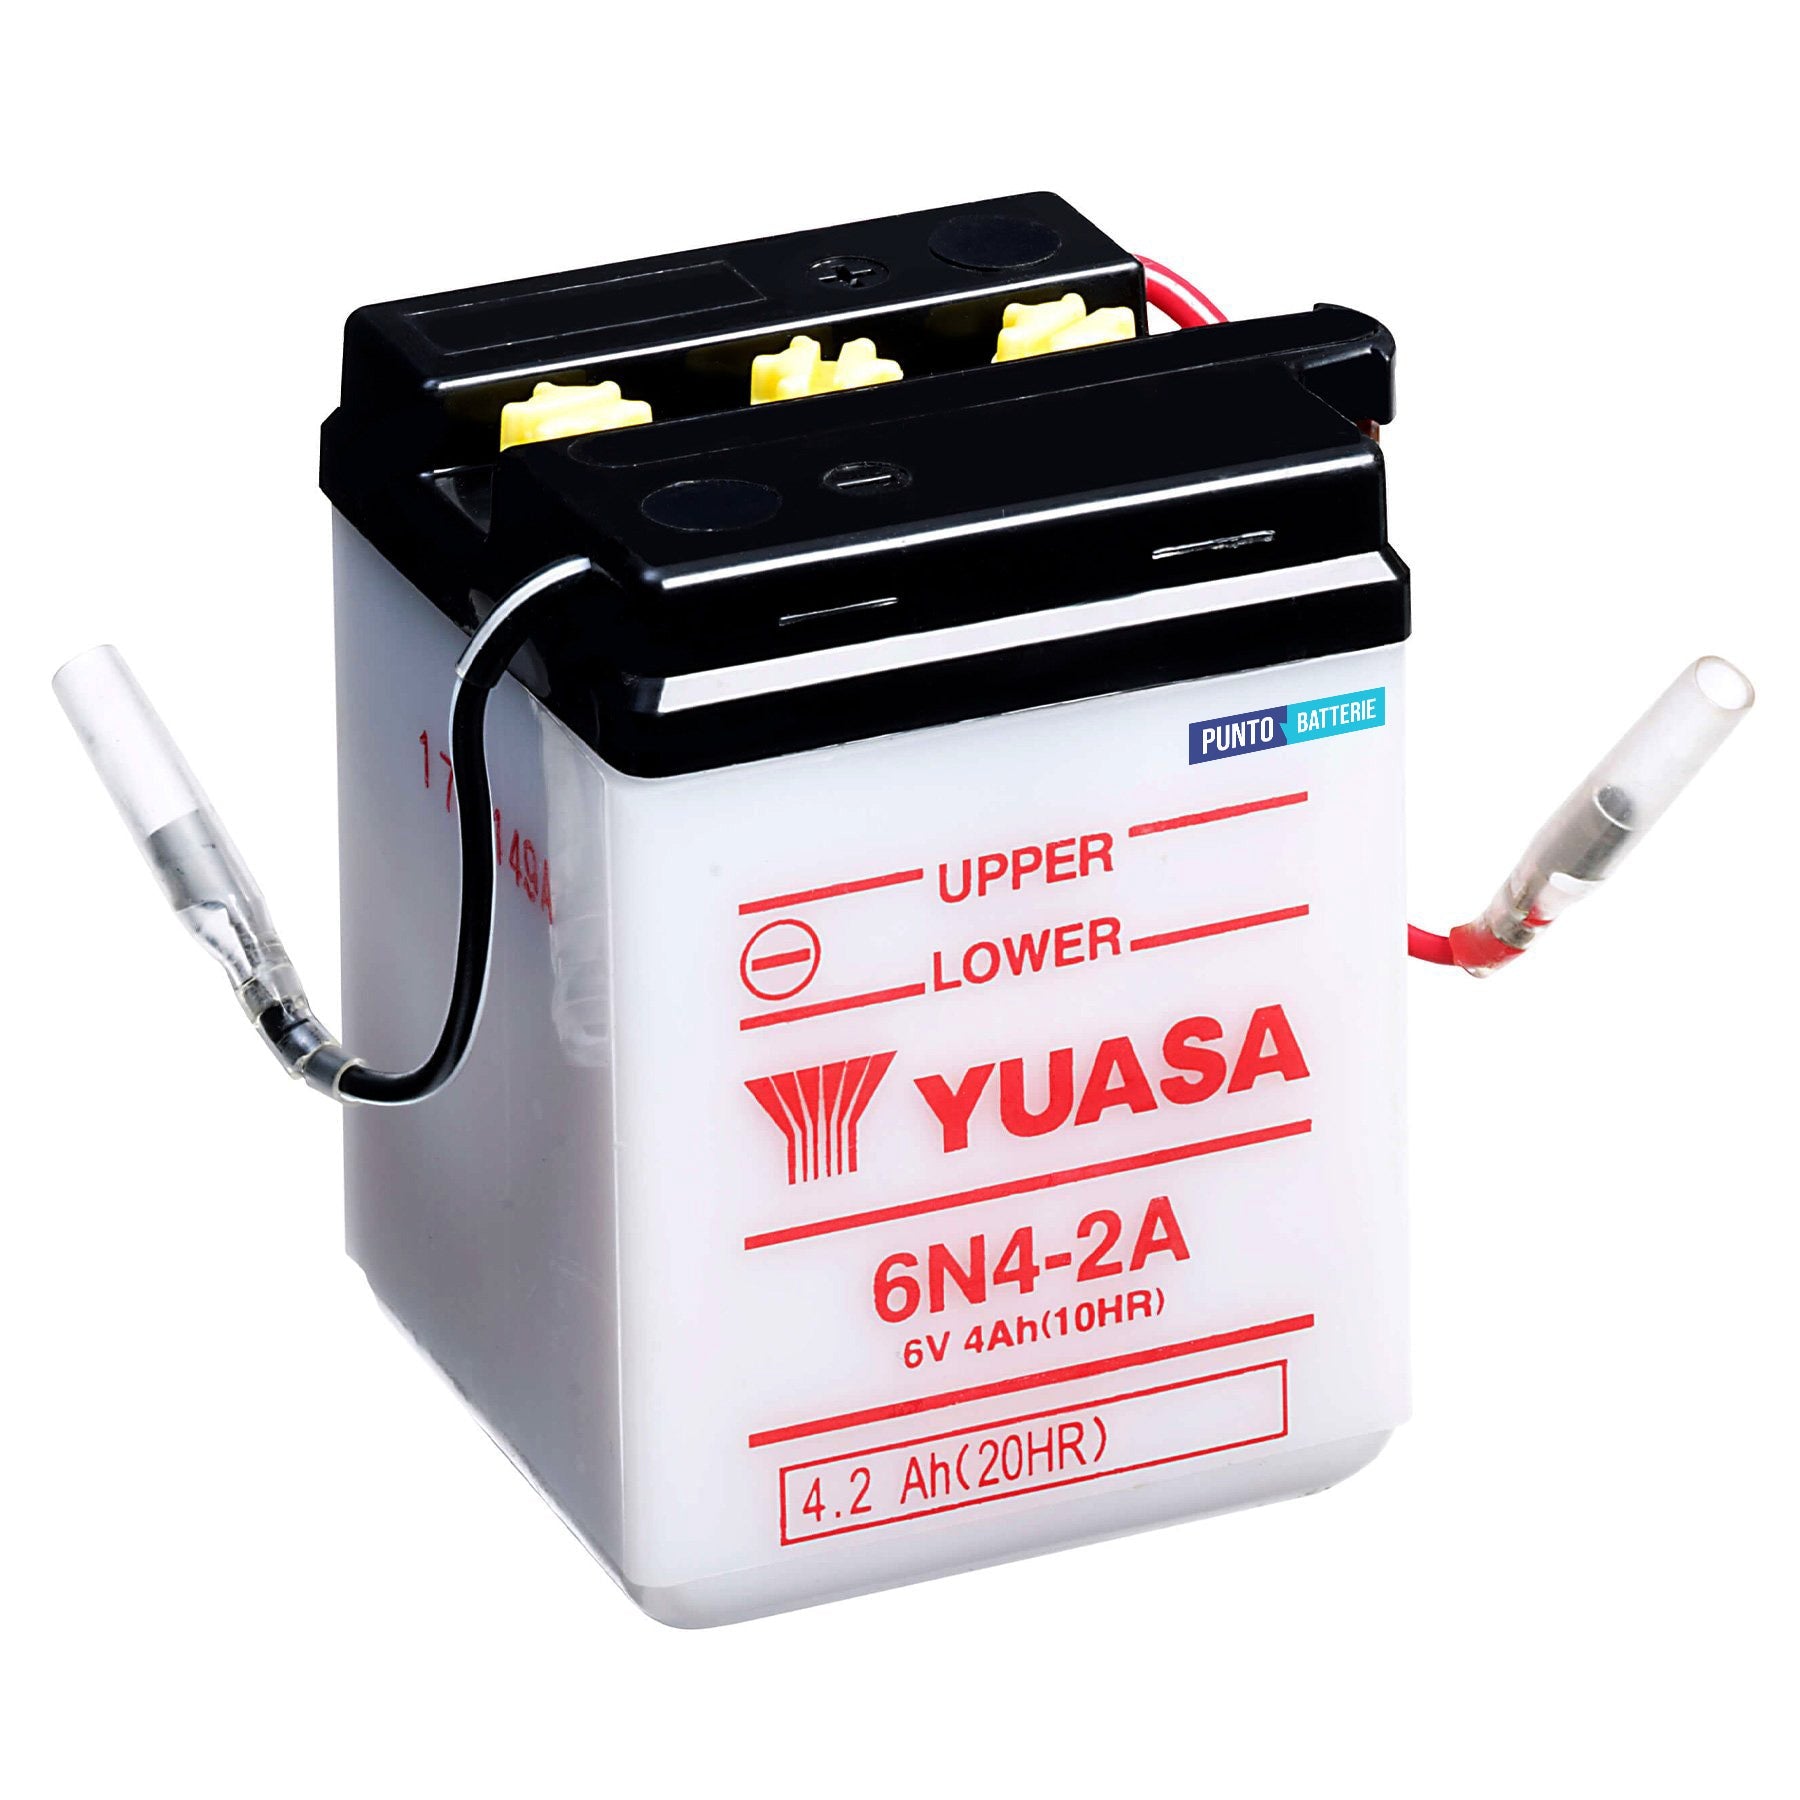 Batteria originale Yuasa Conventional 6N4-2A, dimensioni 71 x 71 x 96, polo positivo a sinistra, 6 volt, 4 amperora. Batteria per moto, scooter e powersport.